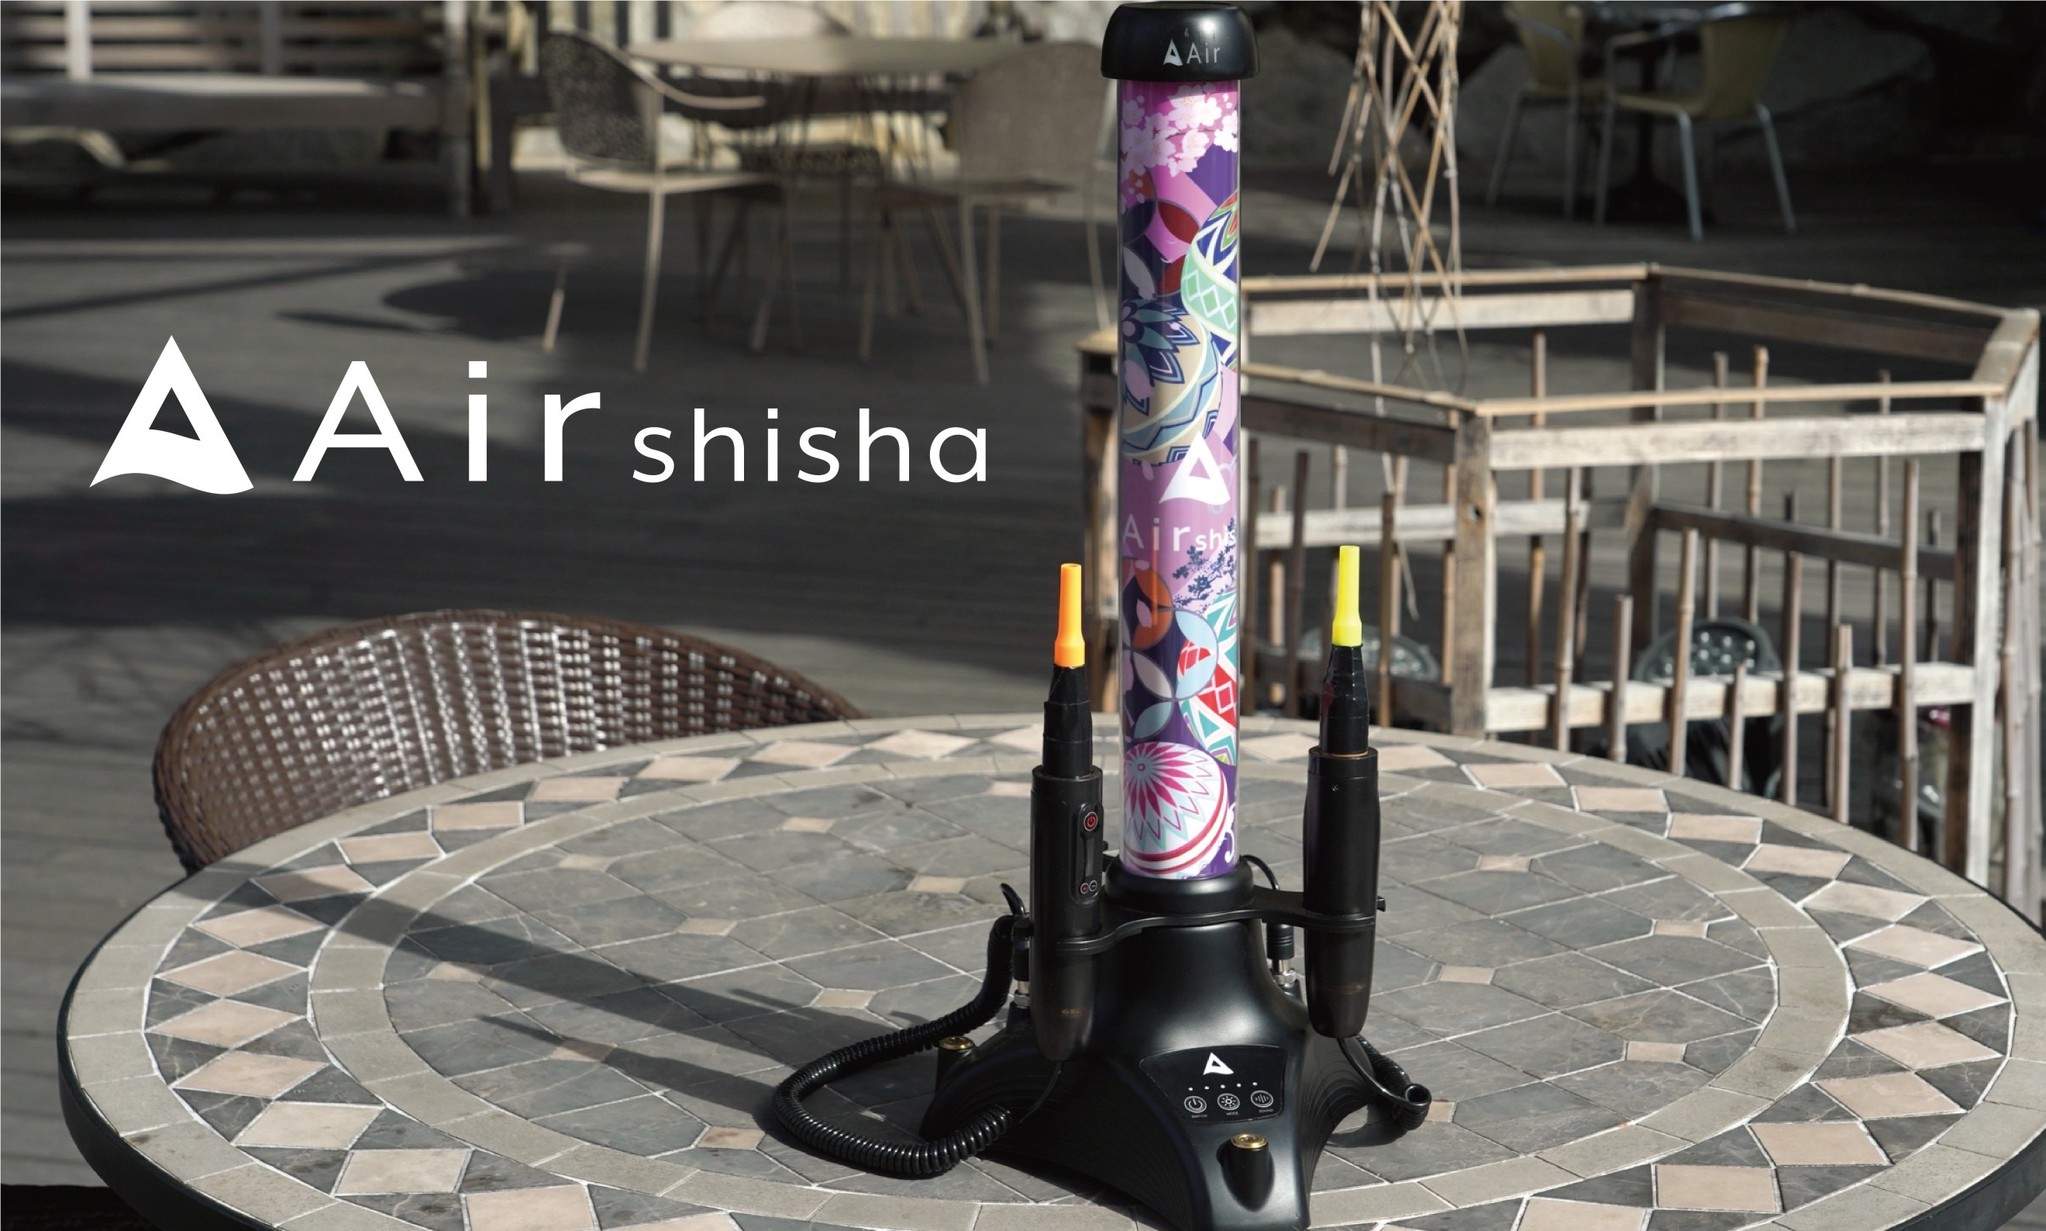 株式会社エアーから“業界初”となる置き型電子シーシャ「Air shisha」が